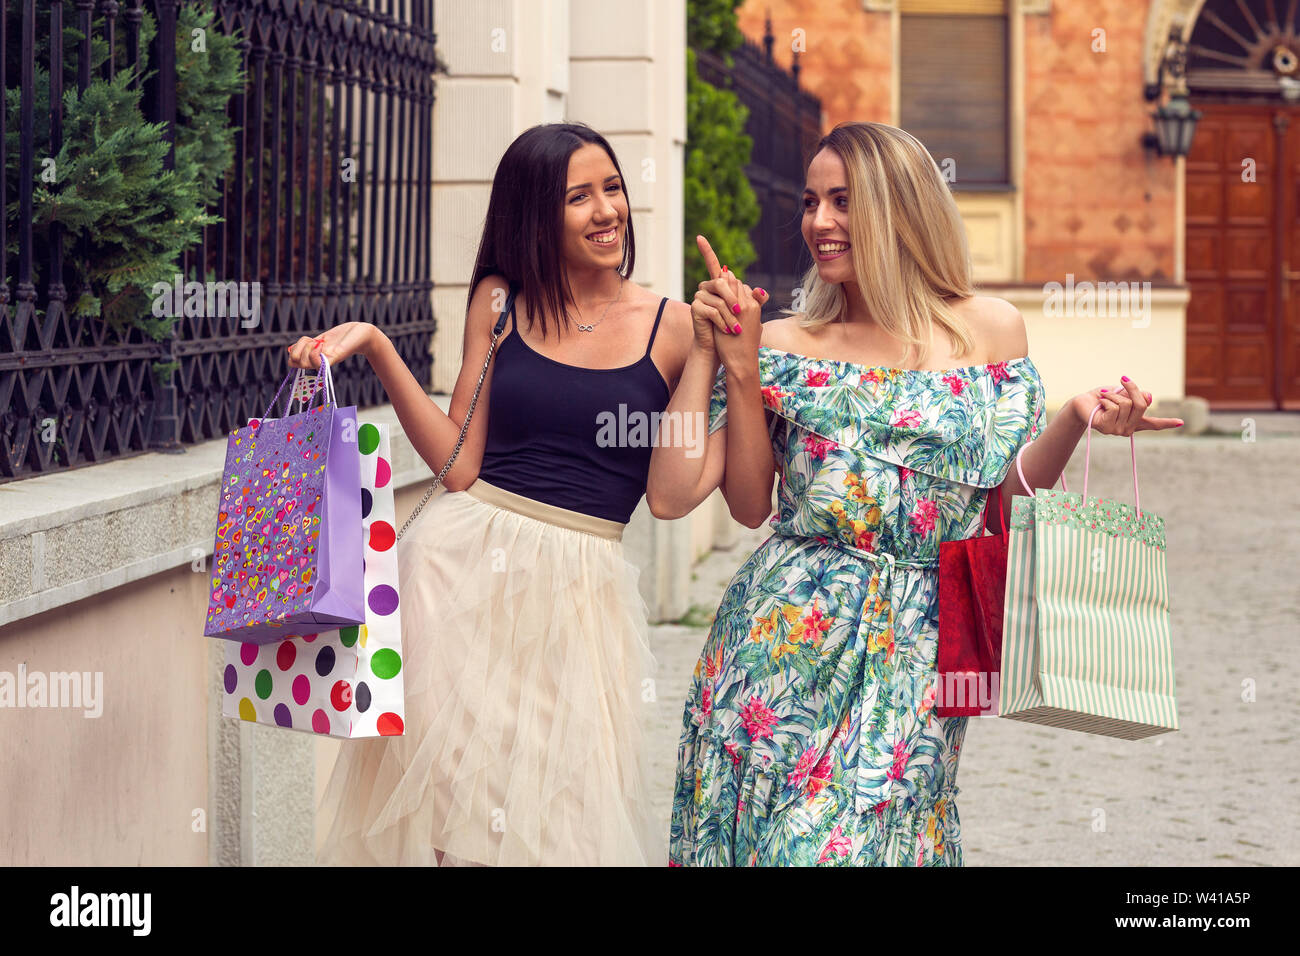 Le bonheur, des amis, de la vente et de l'amusant concept-smiling young girlfriends with shopping bags. Banque D'Images